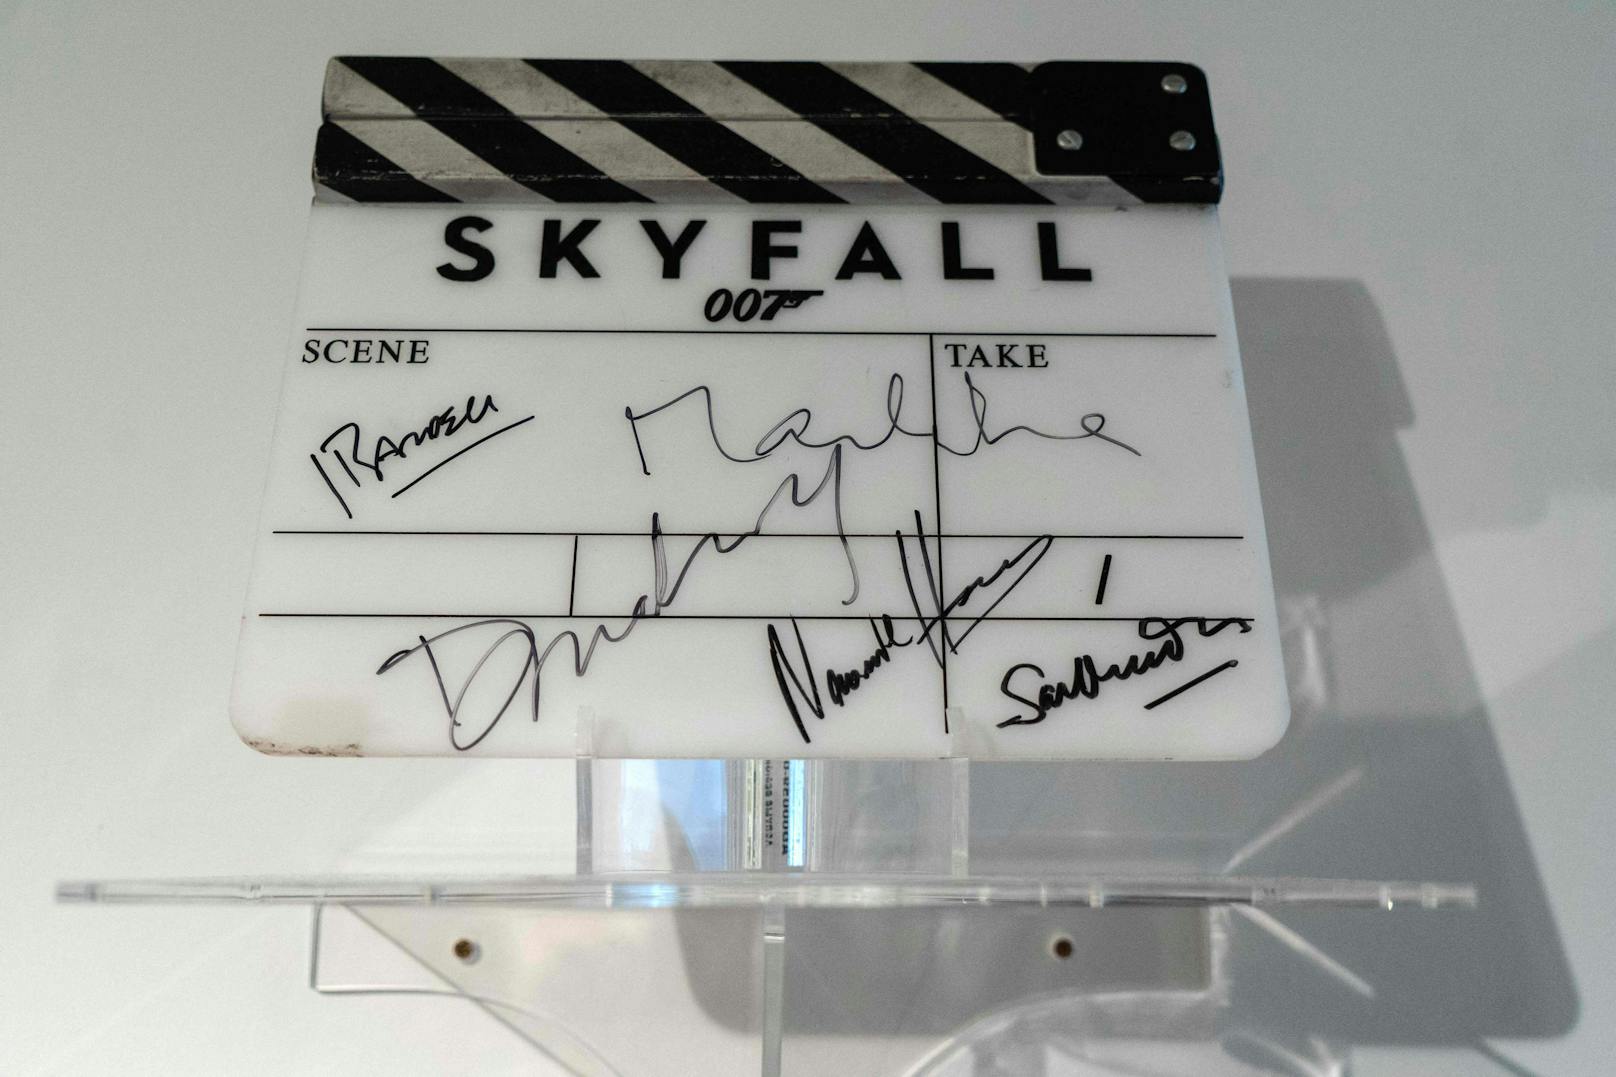 Die Kamera-Klappe aus dem Film "Skyfall" (2008). Signiert vom Hauptdarsteller Daniel Craig sowie von Sam Mendes, dem "Bondgirl" Bérénice Marlohe, Naomie Harris und Javier Bardem.